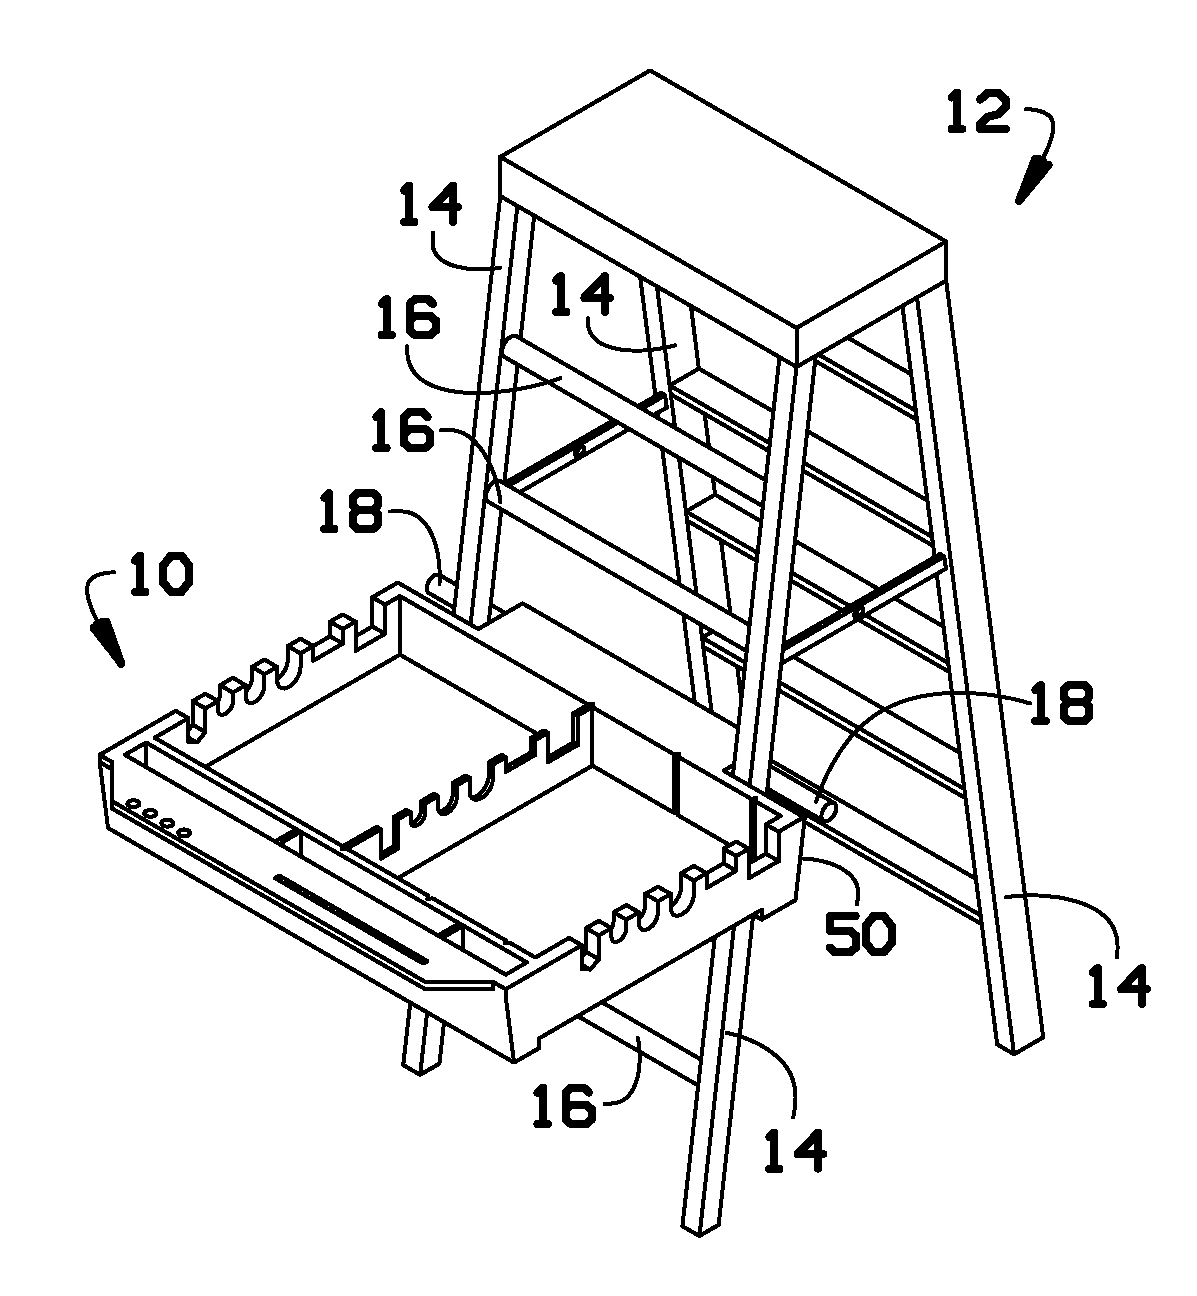 Portable workstation for a ladder